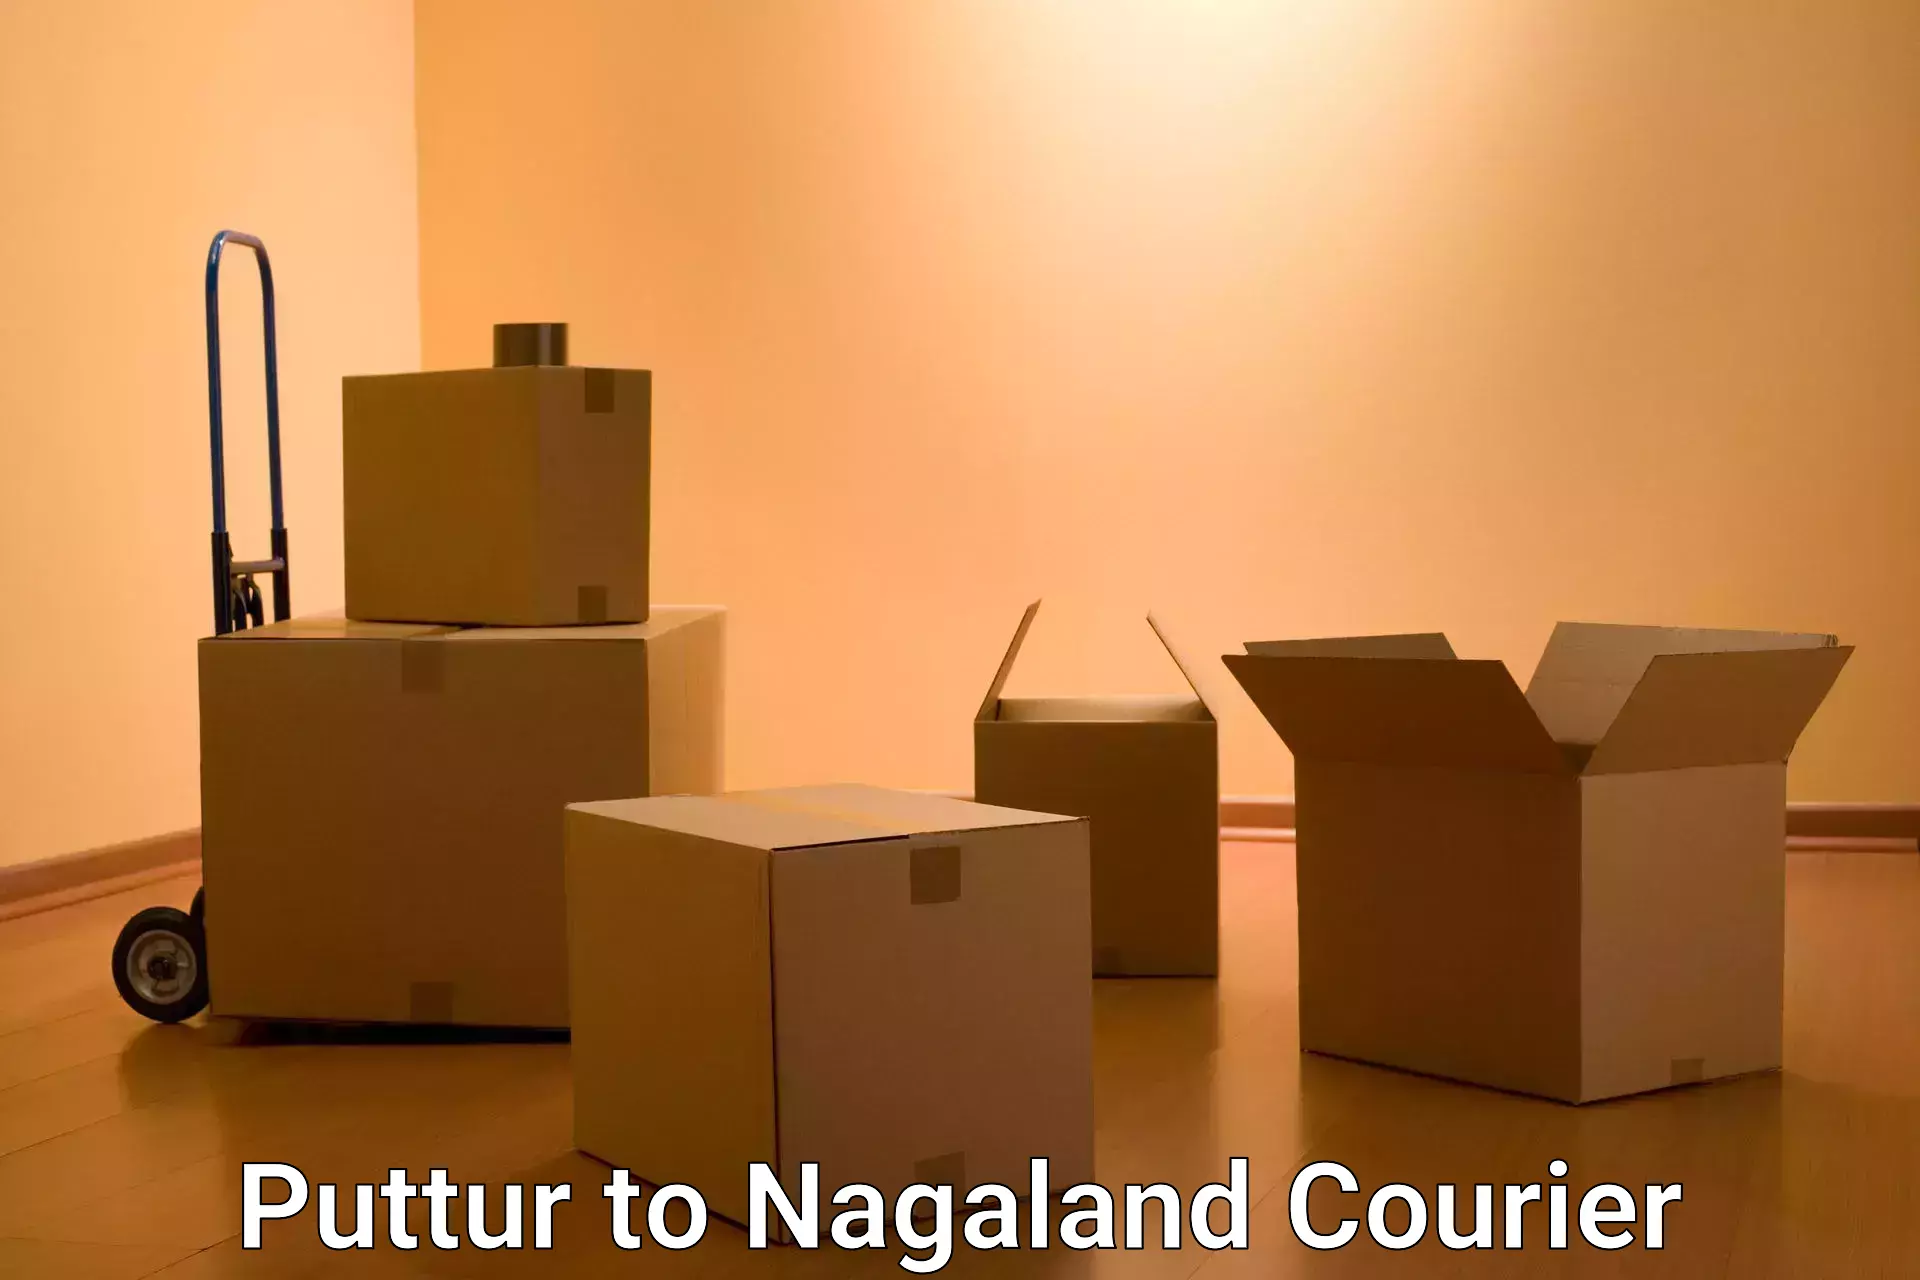 Professional parcel services Puttur to Nagaland